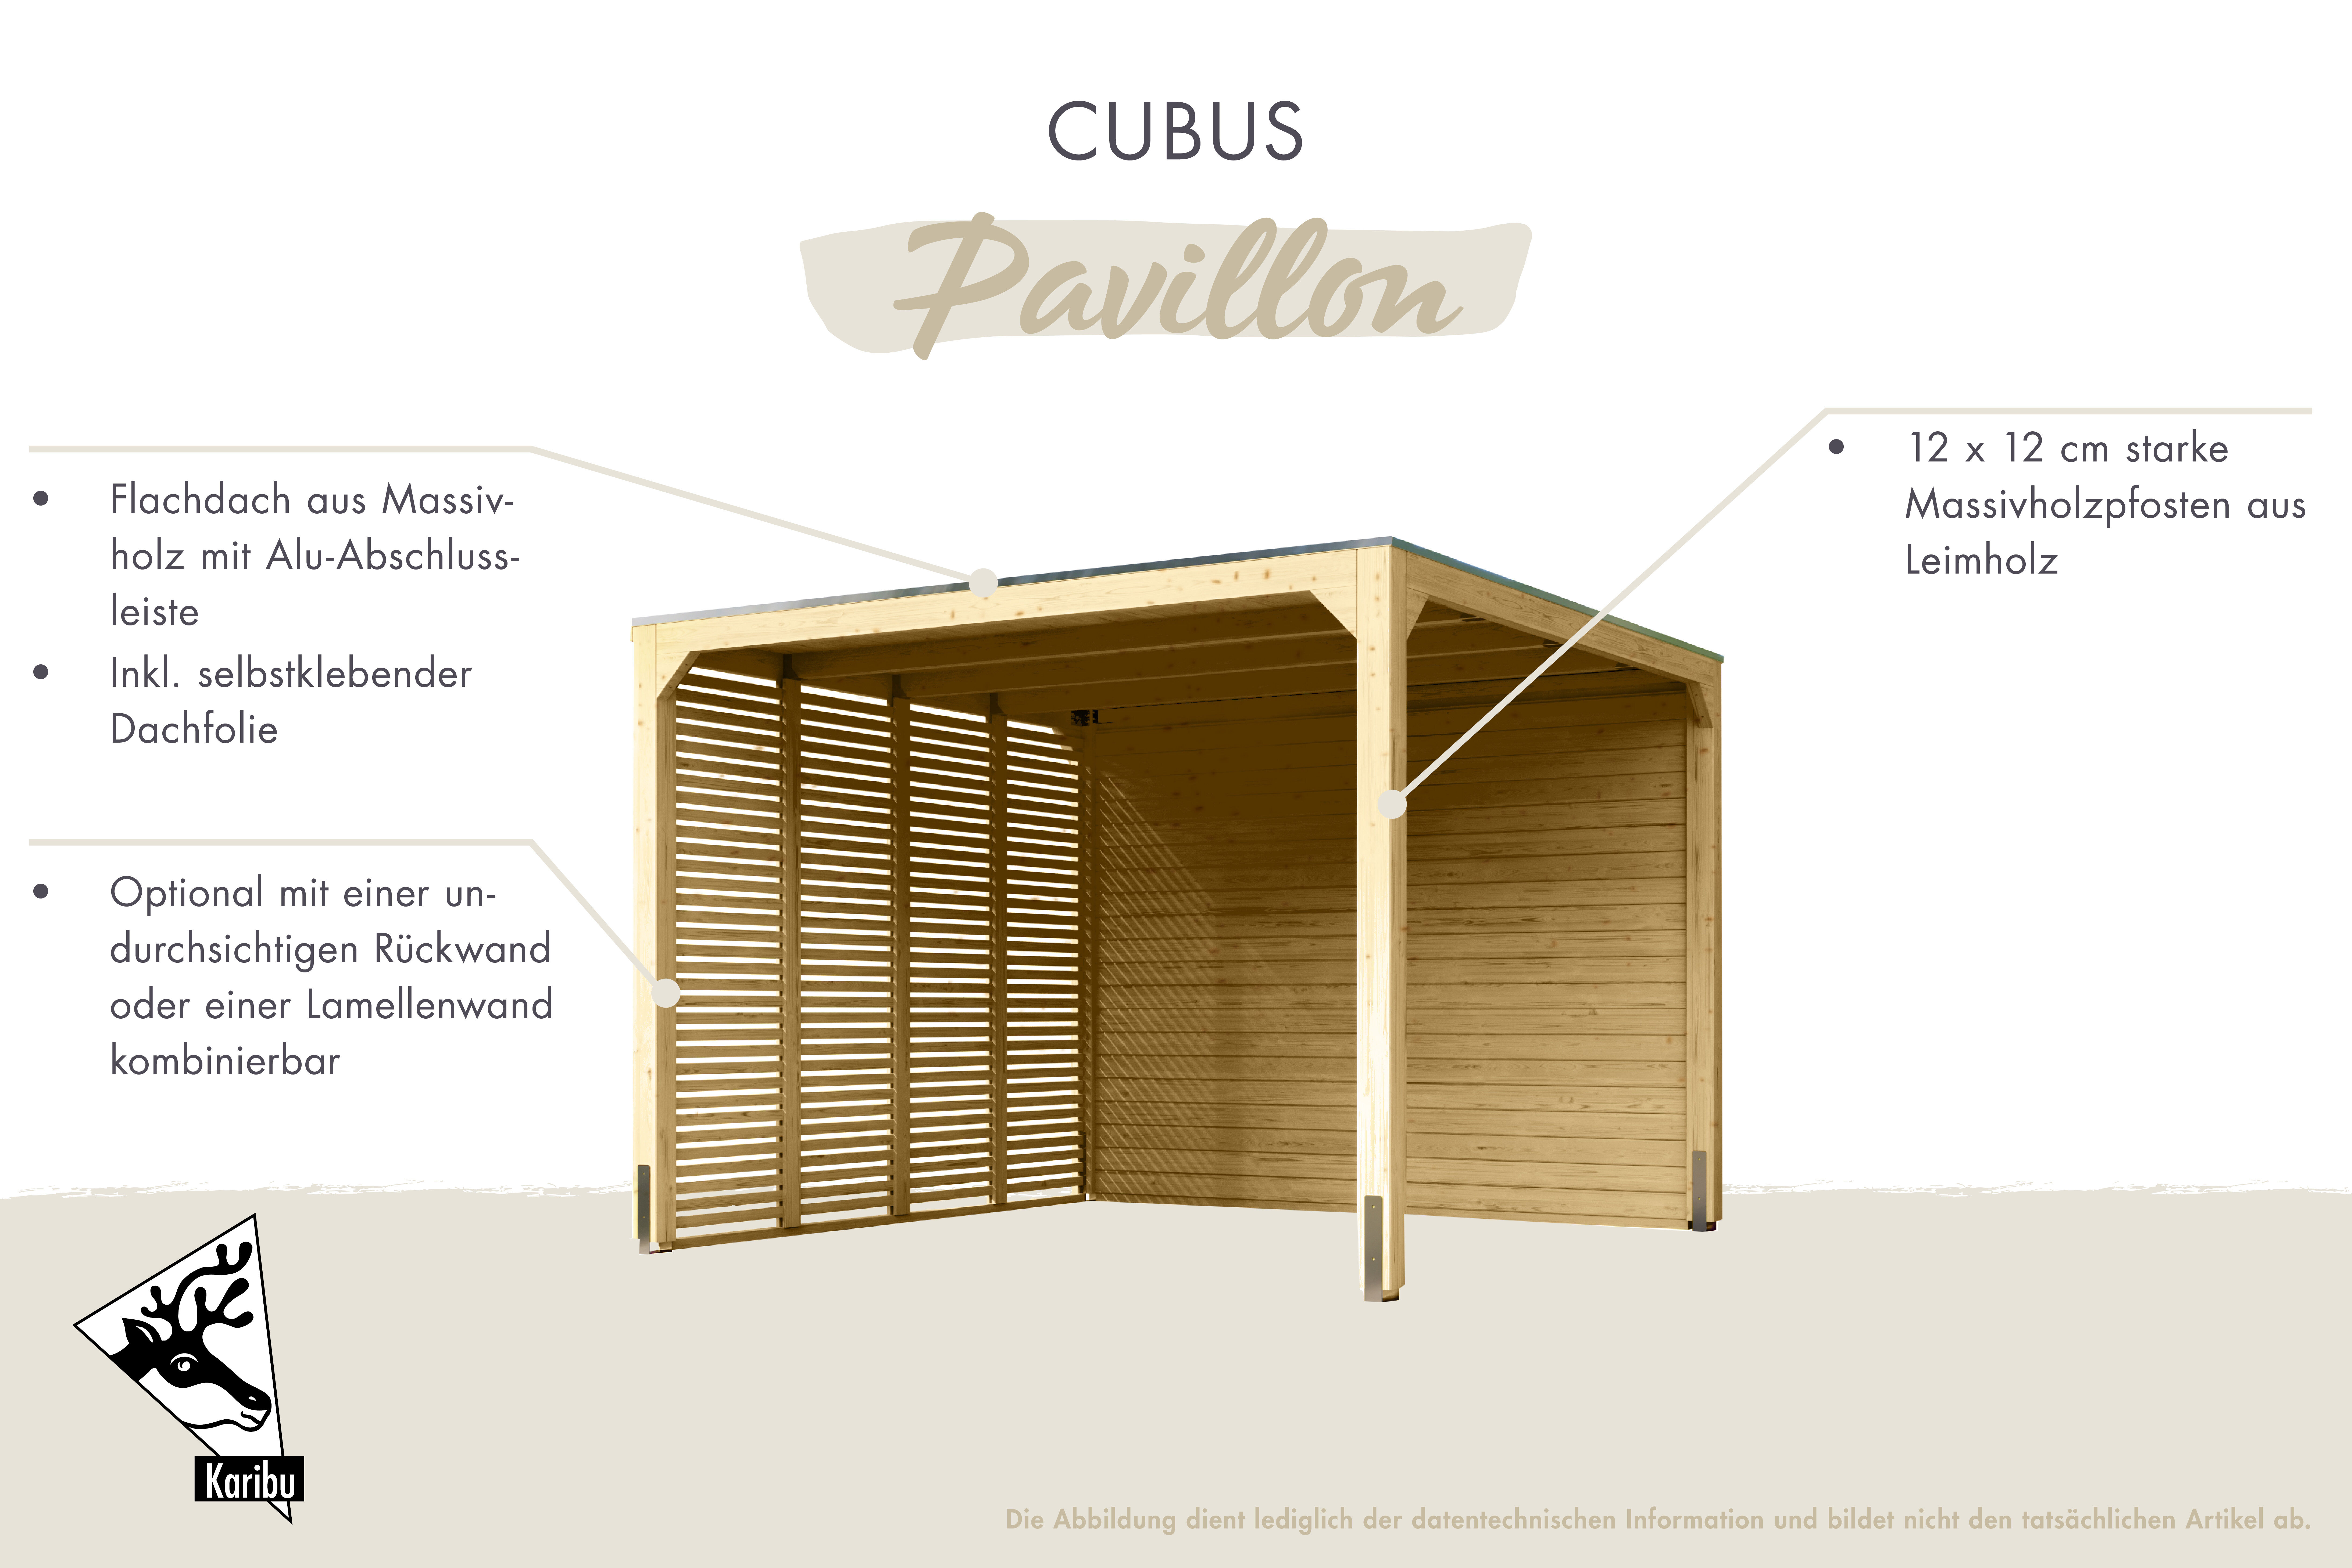 Pavillon Cubus